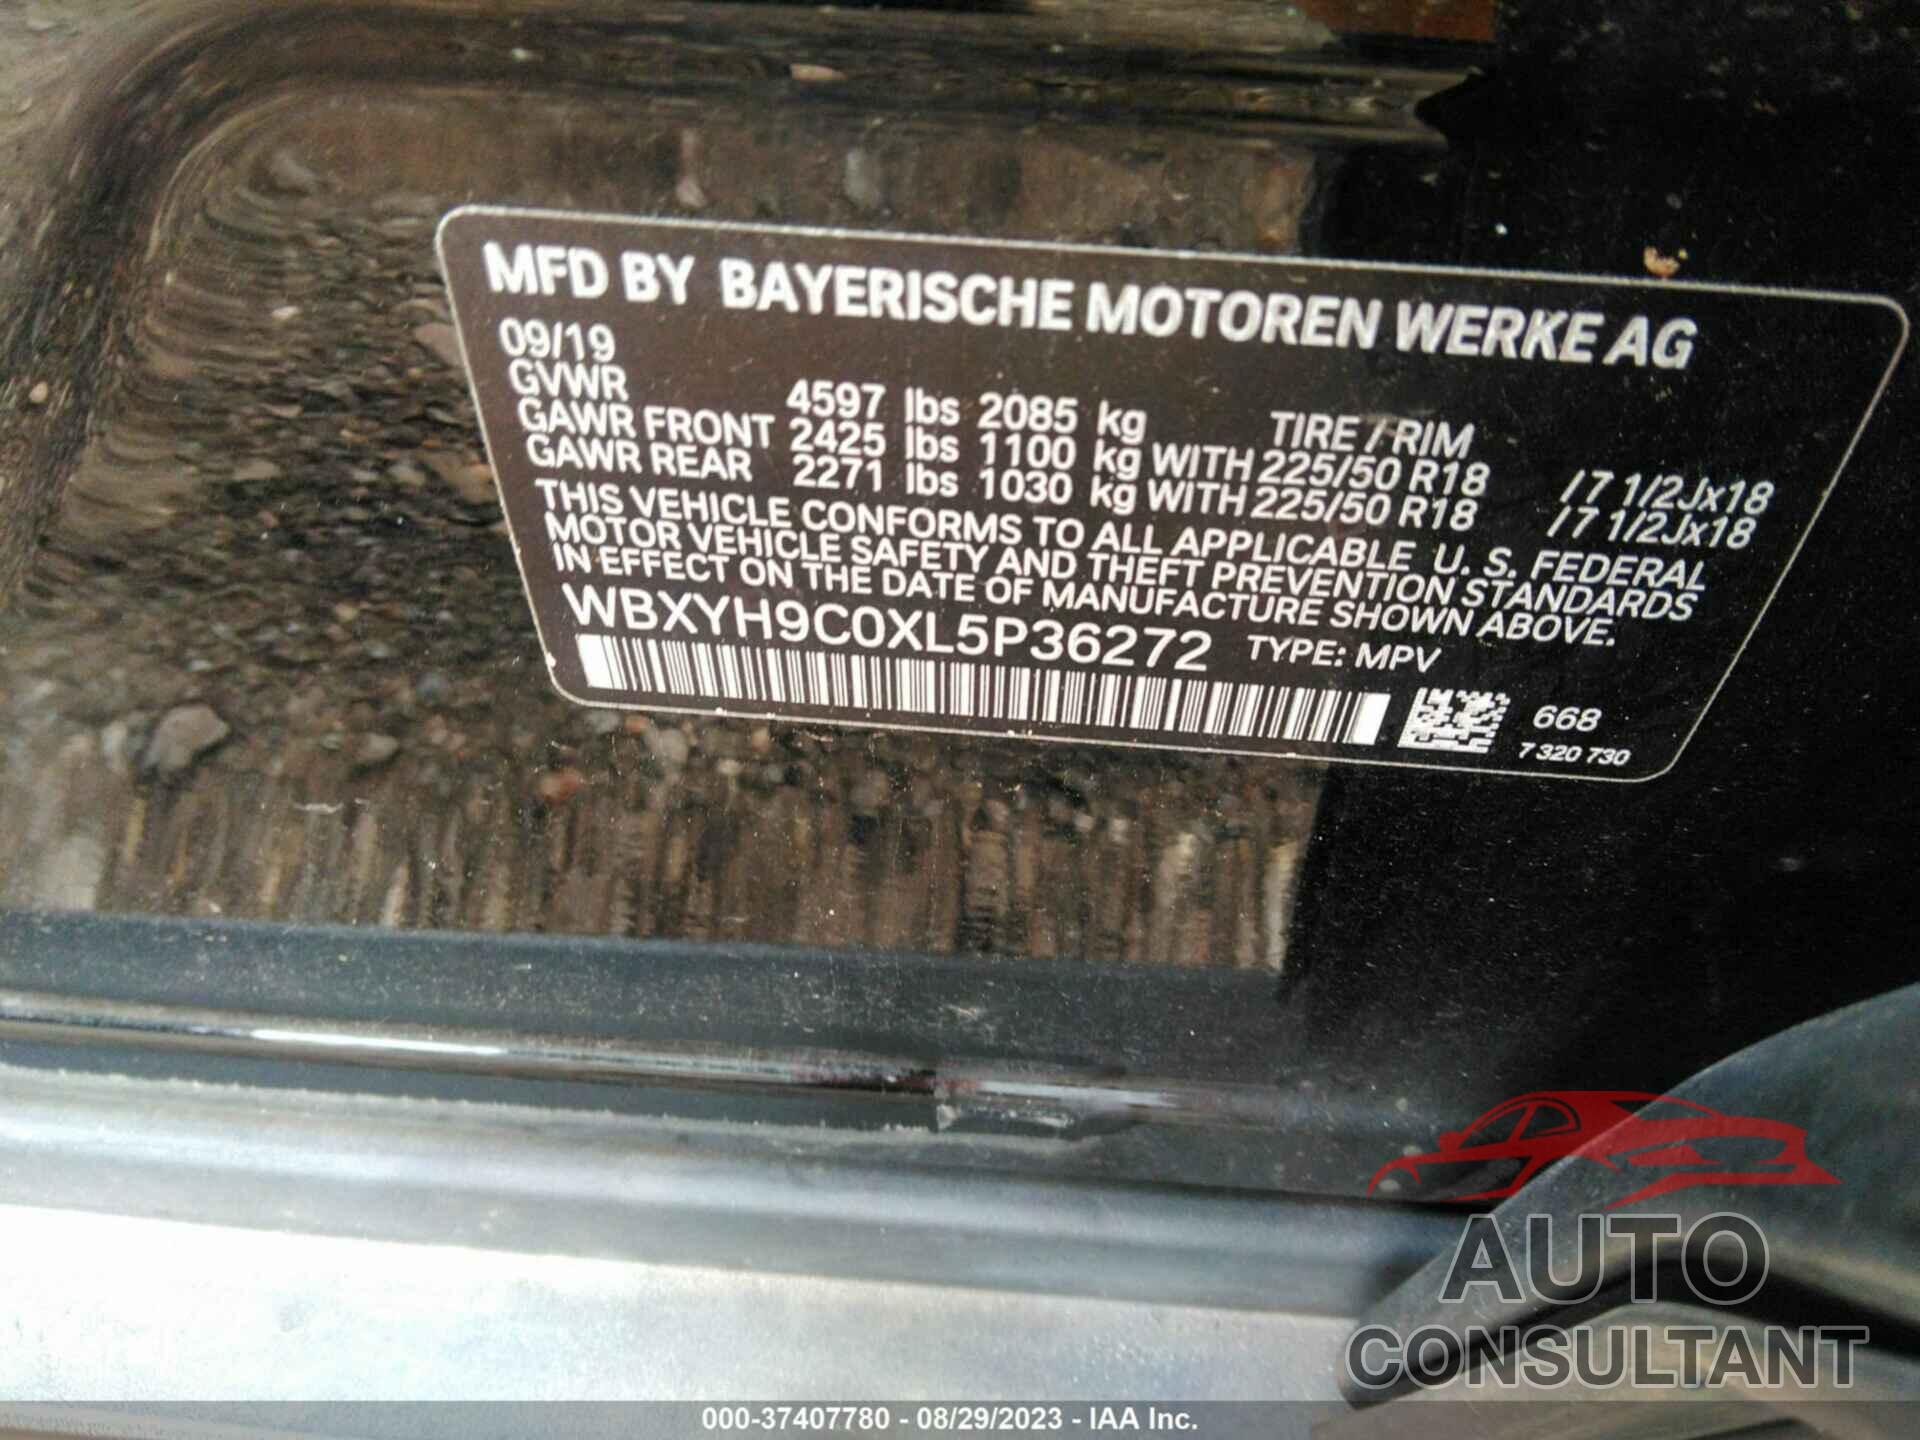 BMW X2 2020 - WBXYH9C0XL5P36272